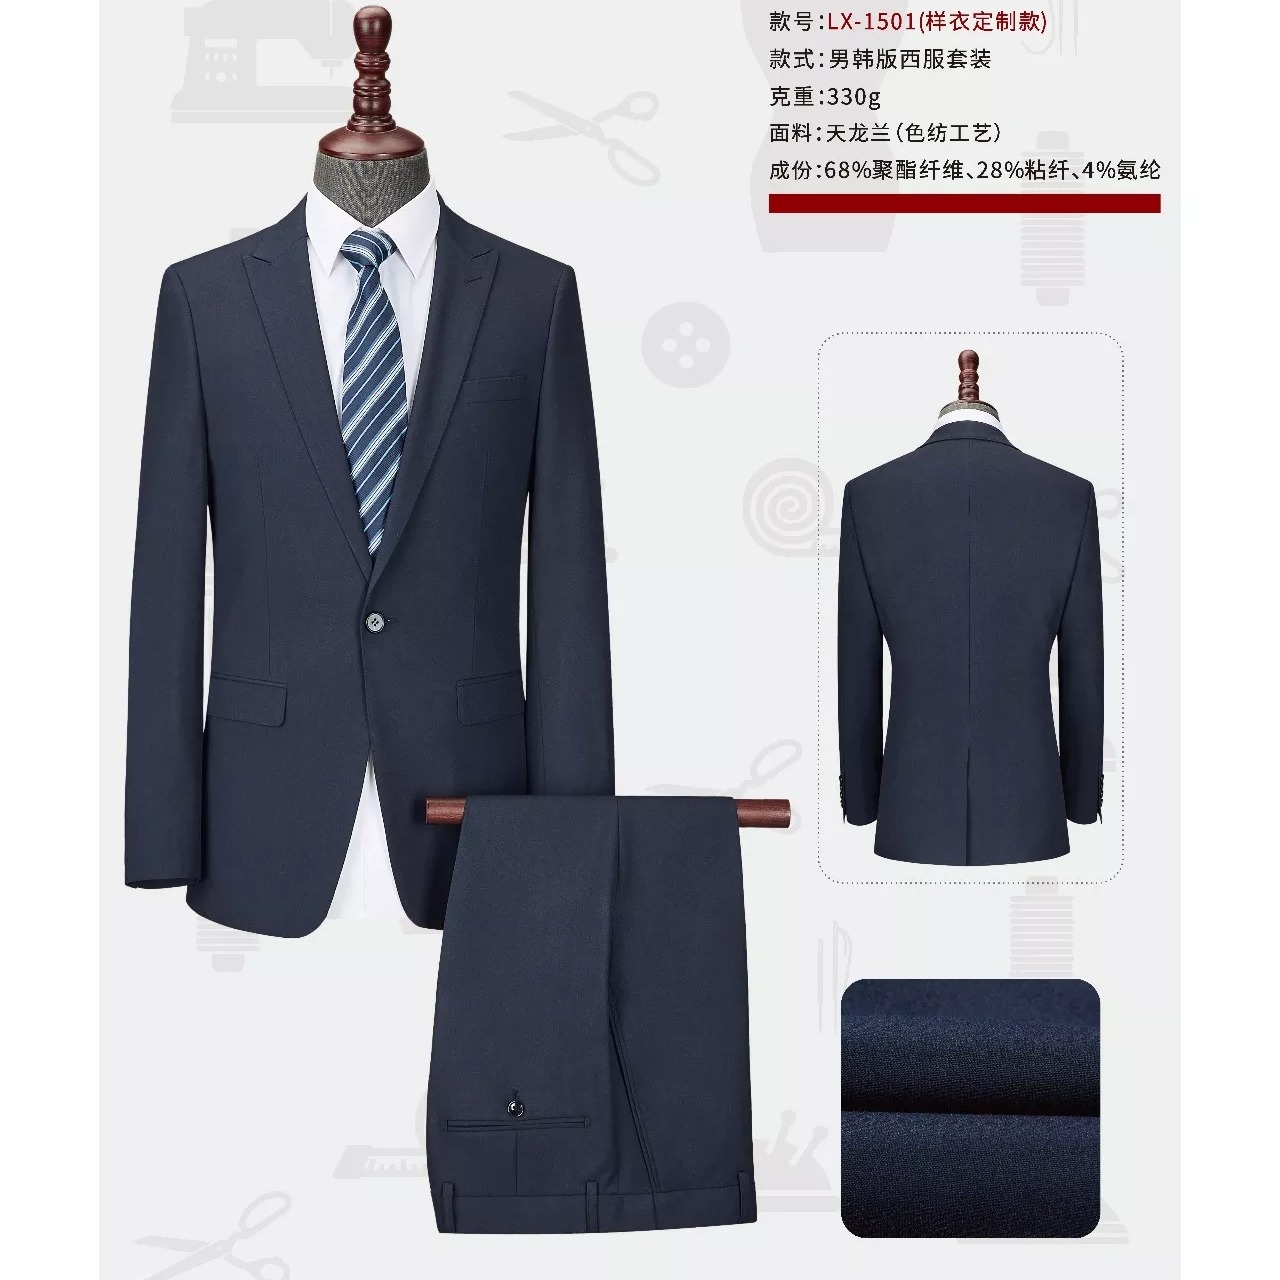 款式新颖 设计时尚 西安西服厂家定做 男式西服套装 西安职业西装4